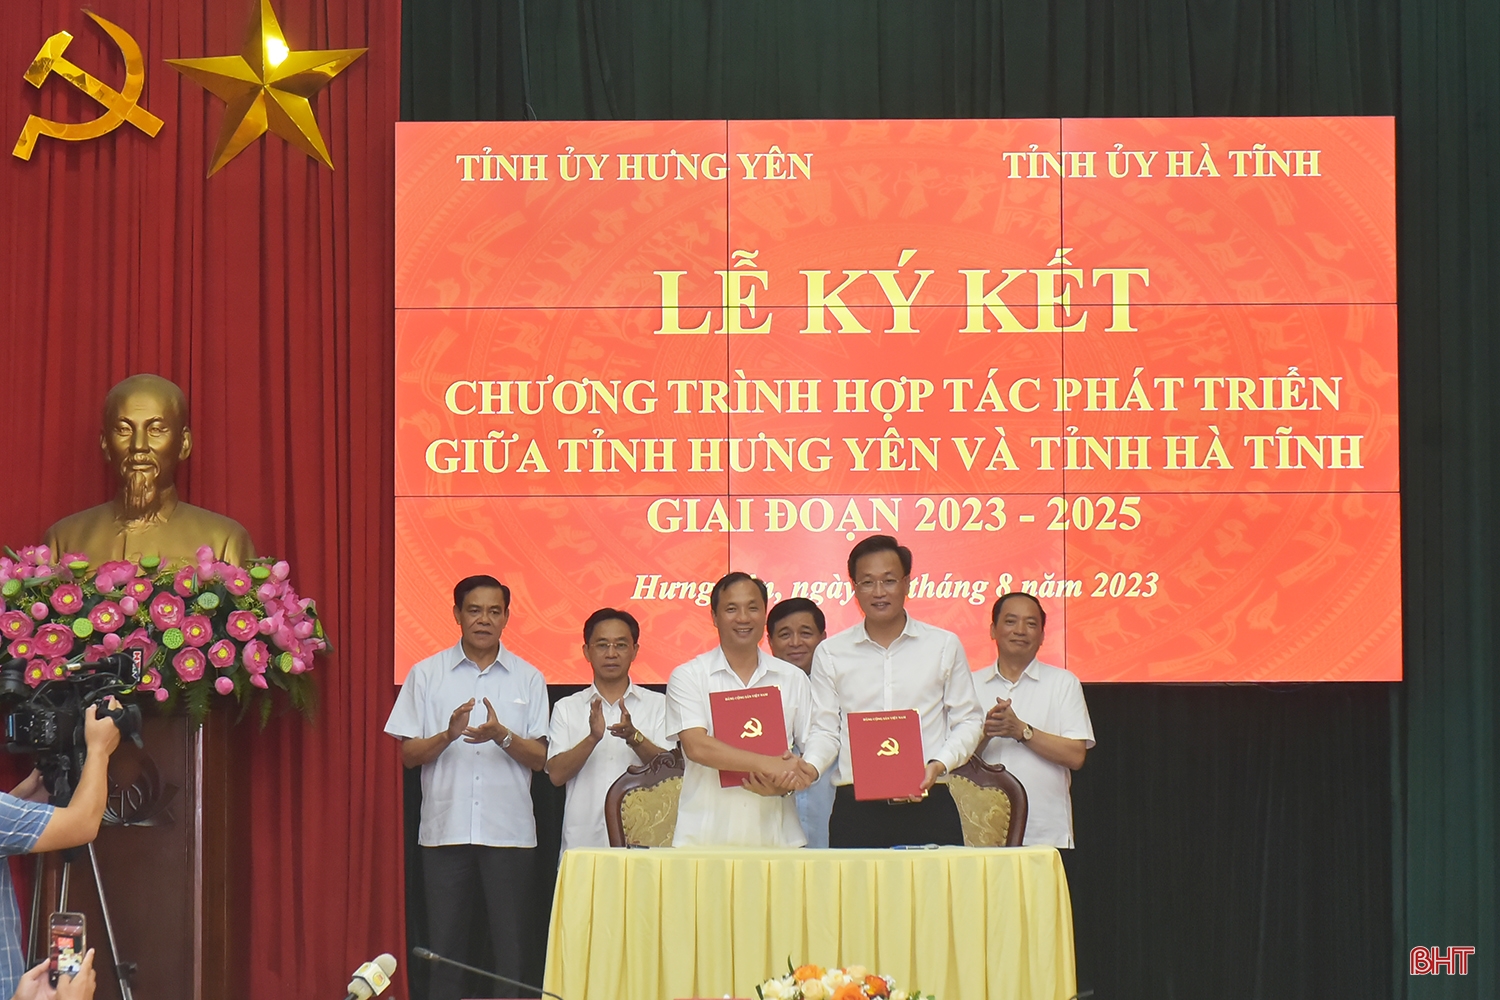 Hà Tĩnh và Hưng Yên ký kết hợp tác phát triển giai đoạn 2023 - 2025